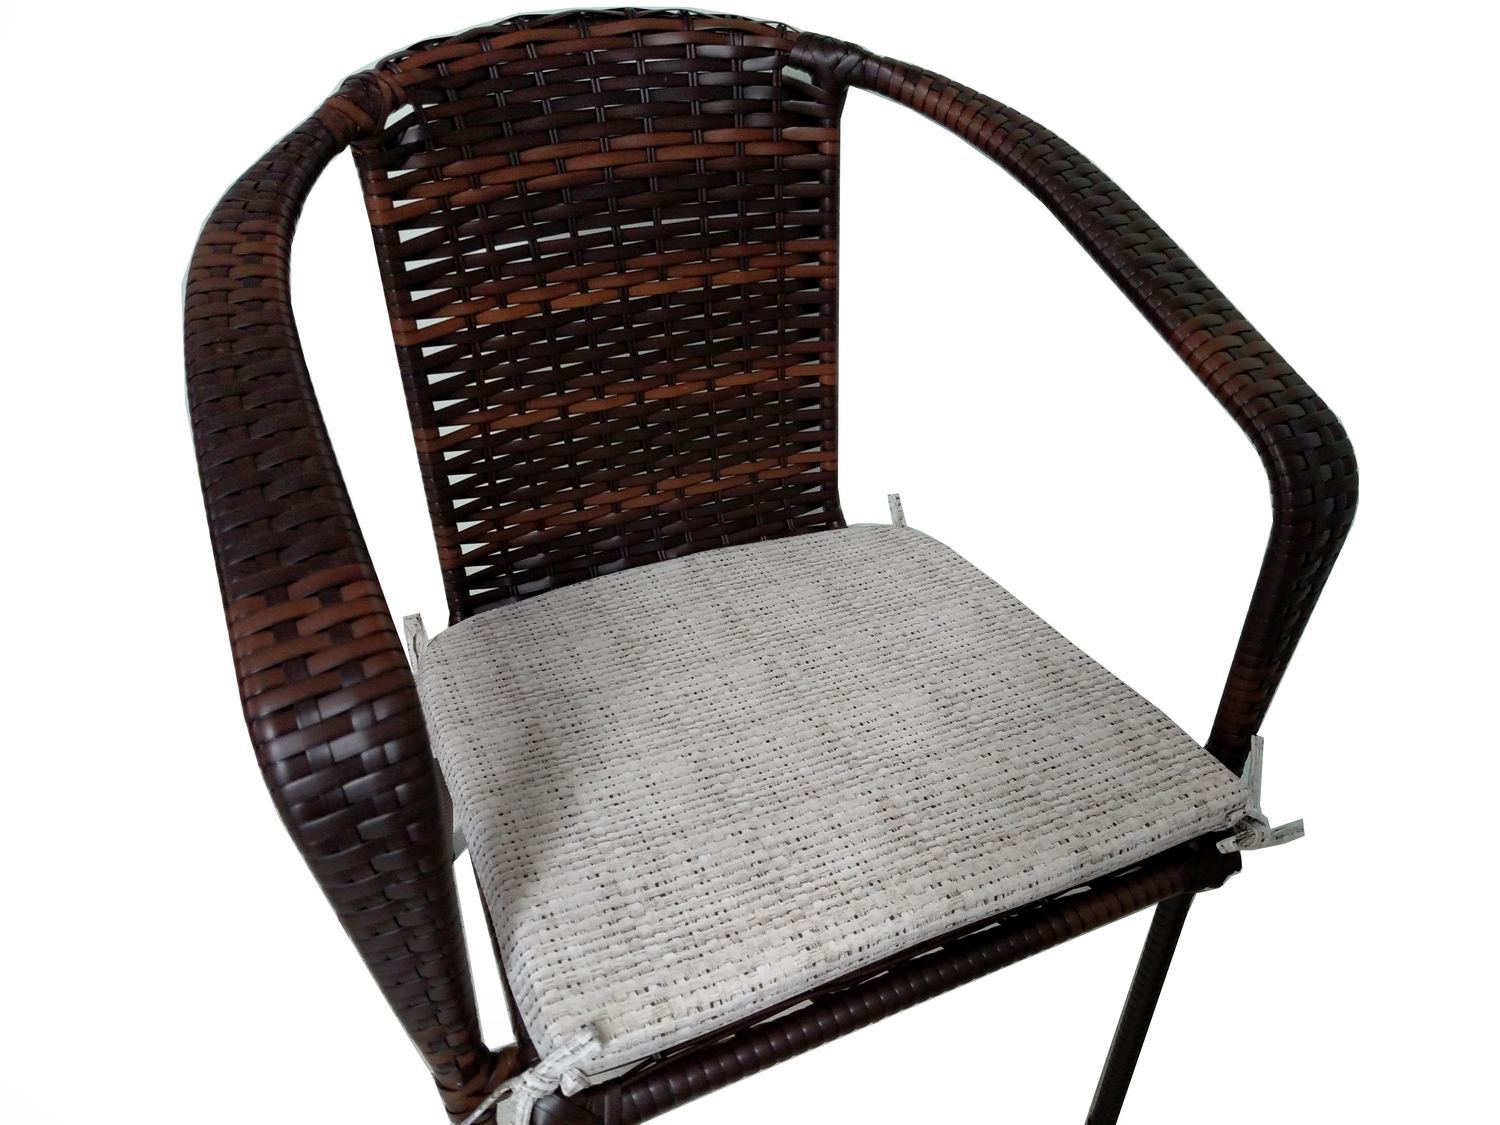 Jogo C 2 Cadeiras + Mesa 60cm Em Fibra Sintética P Varandas